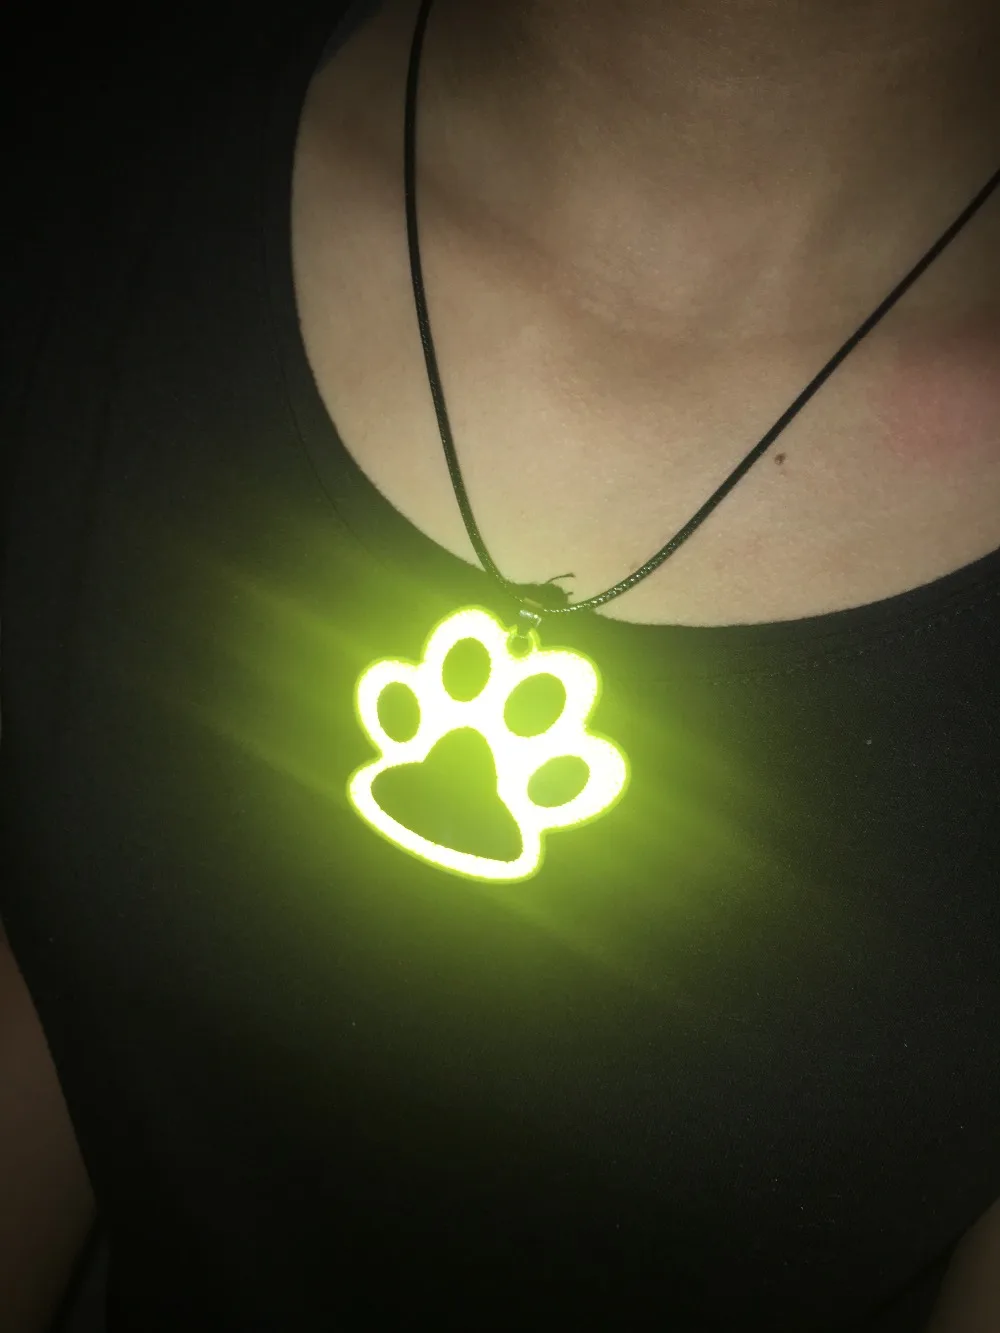 Собачьи следы, ваш мир я пришел светоотражающий кулон ожерелье аксессуары улучшает ночную видимость. Безопасное использование